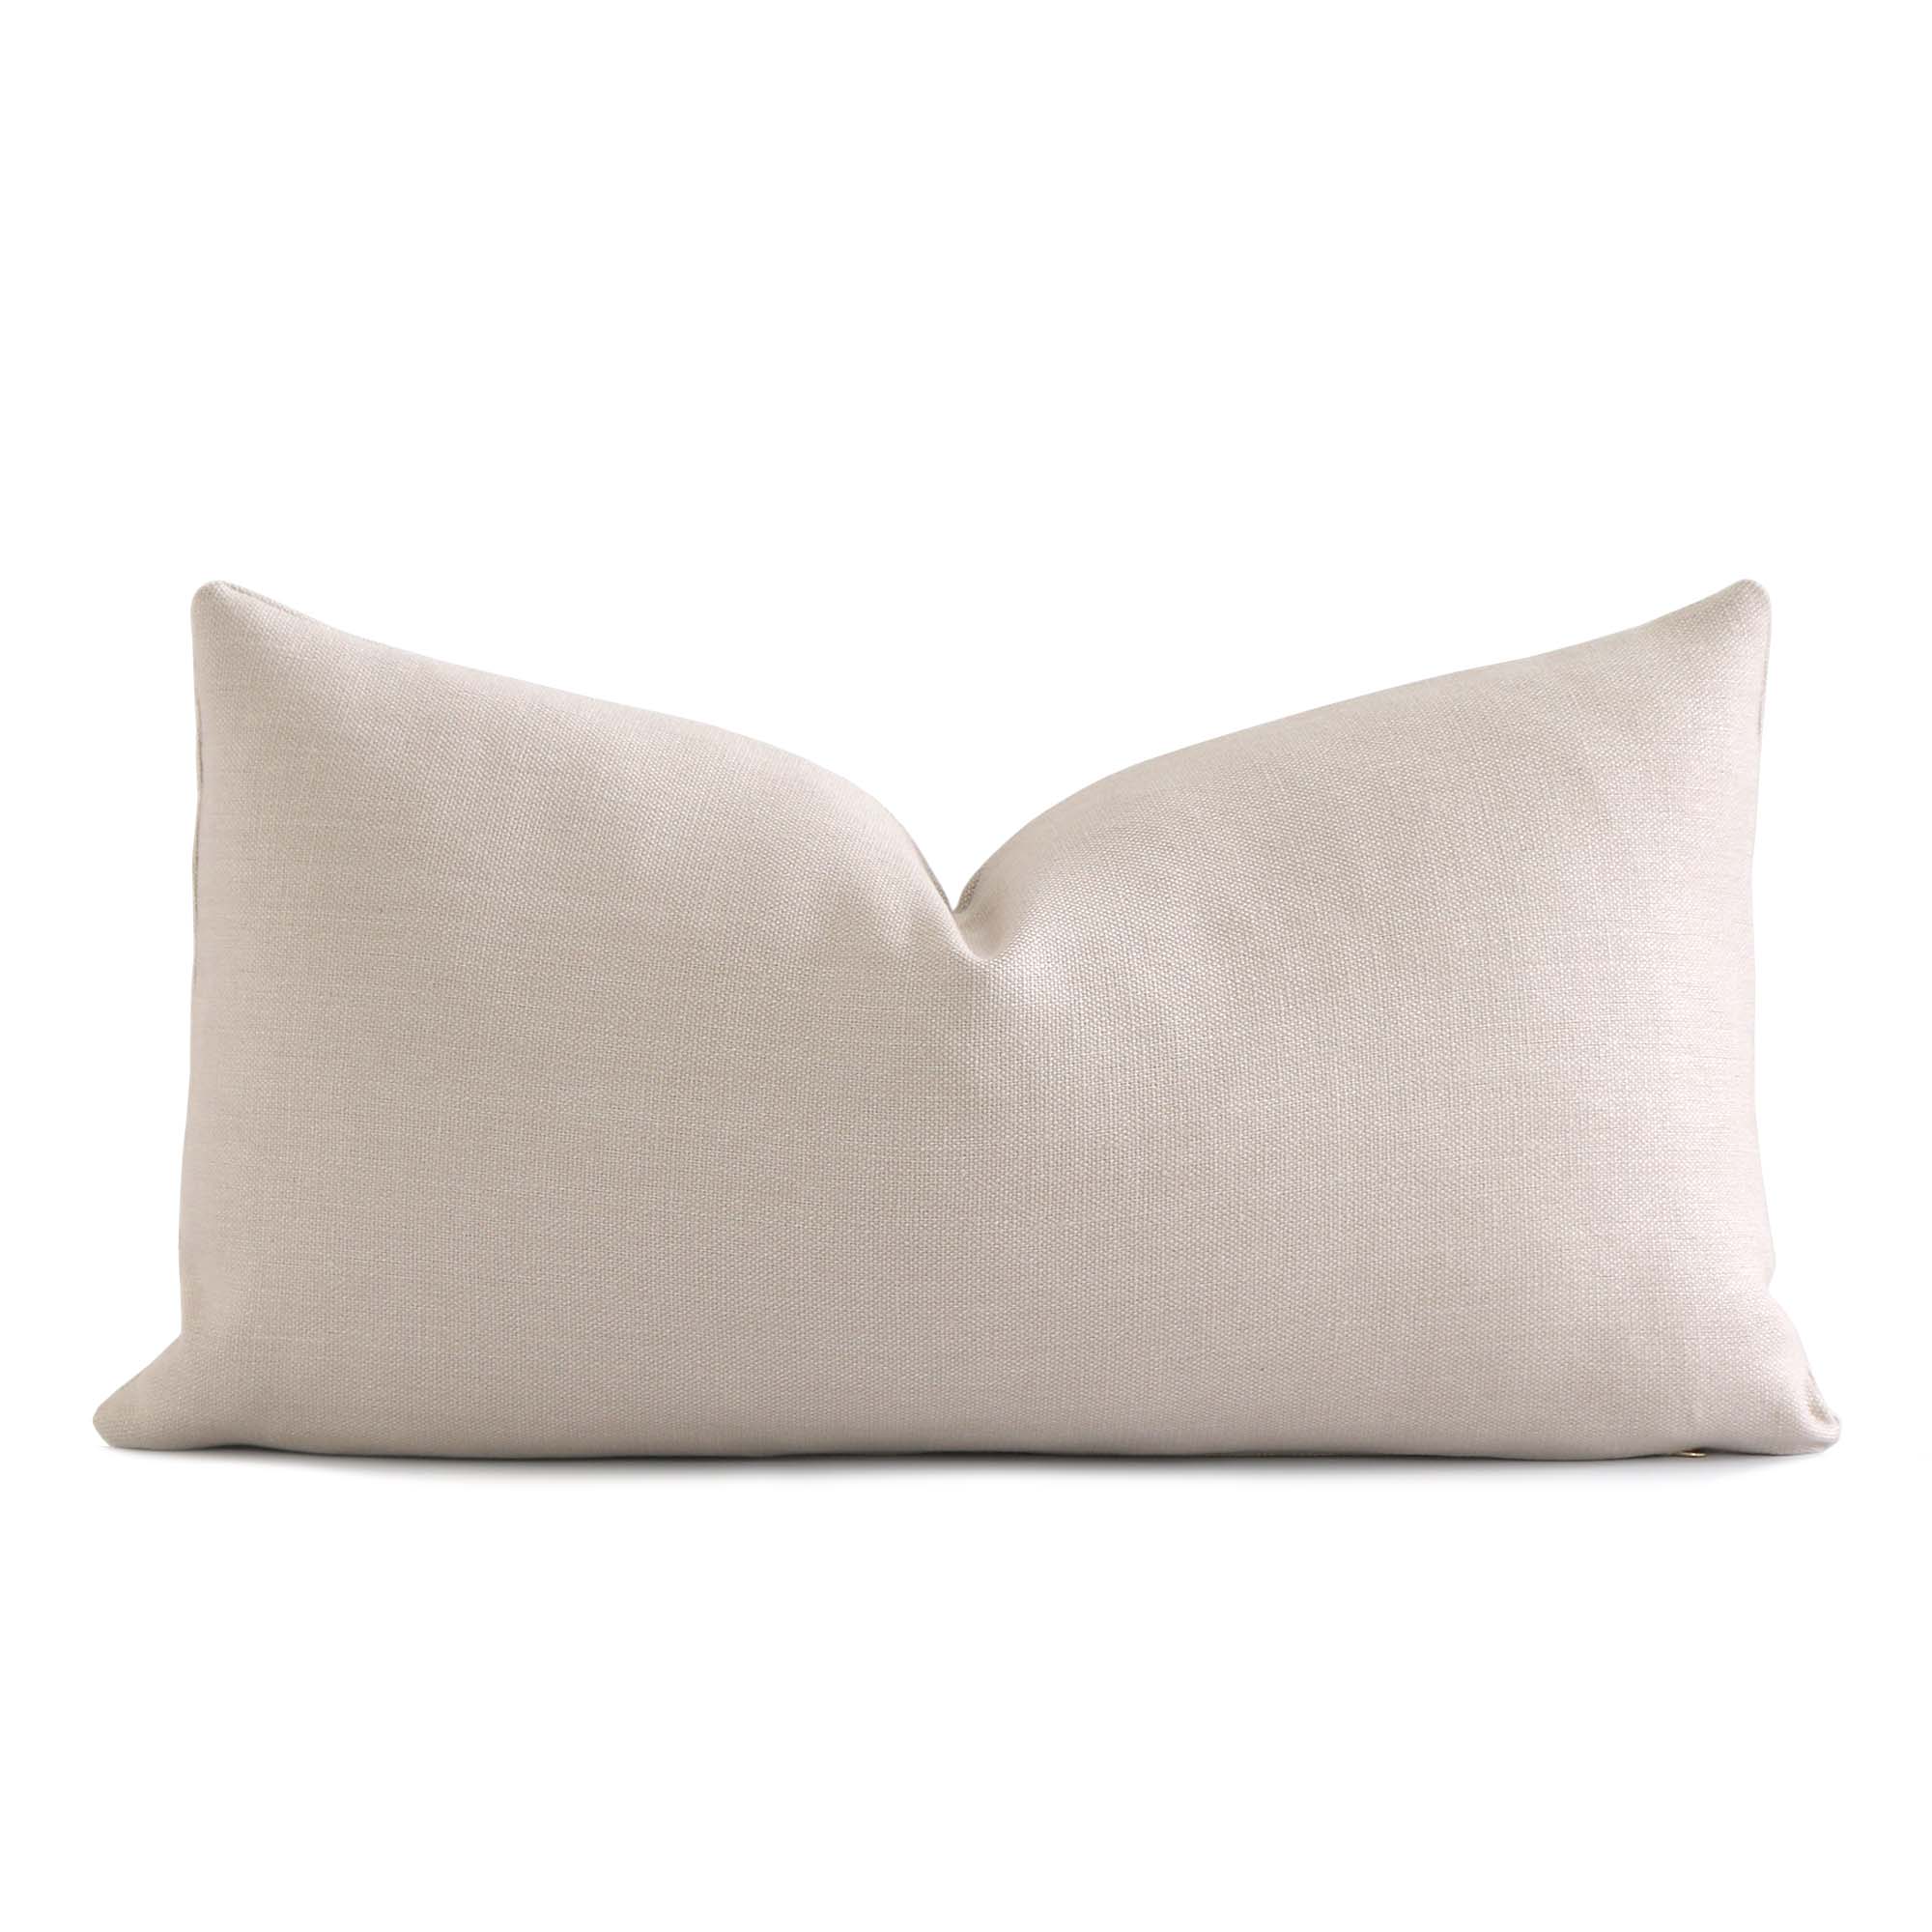 One Cream Belgian Linen Zippered Pillow cover / 12x18 Pillow cover / Plain  20x20 pillow cover / Cream 18x18 / Solid Cream Cushion